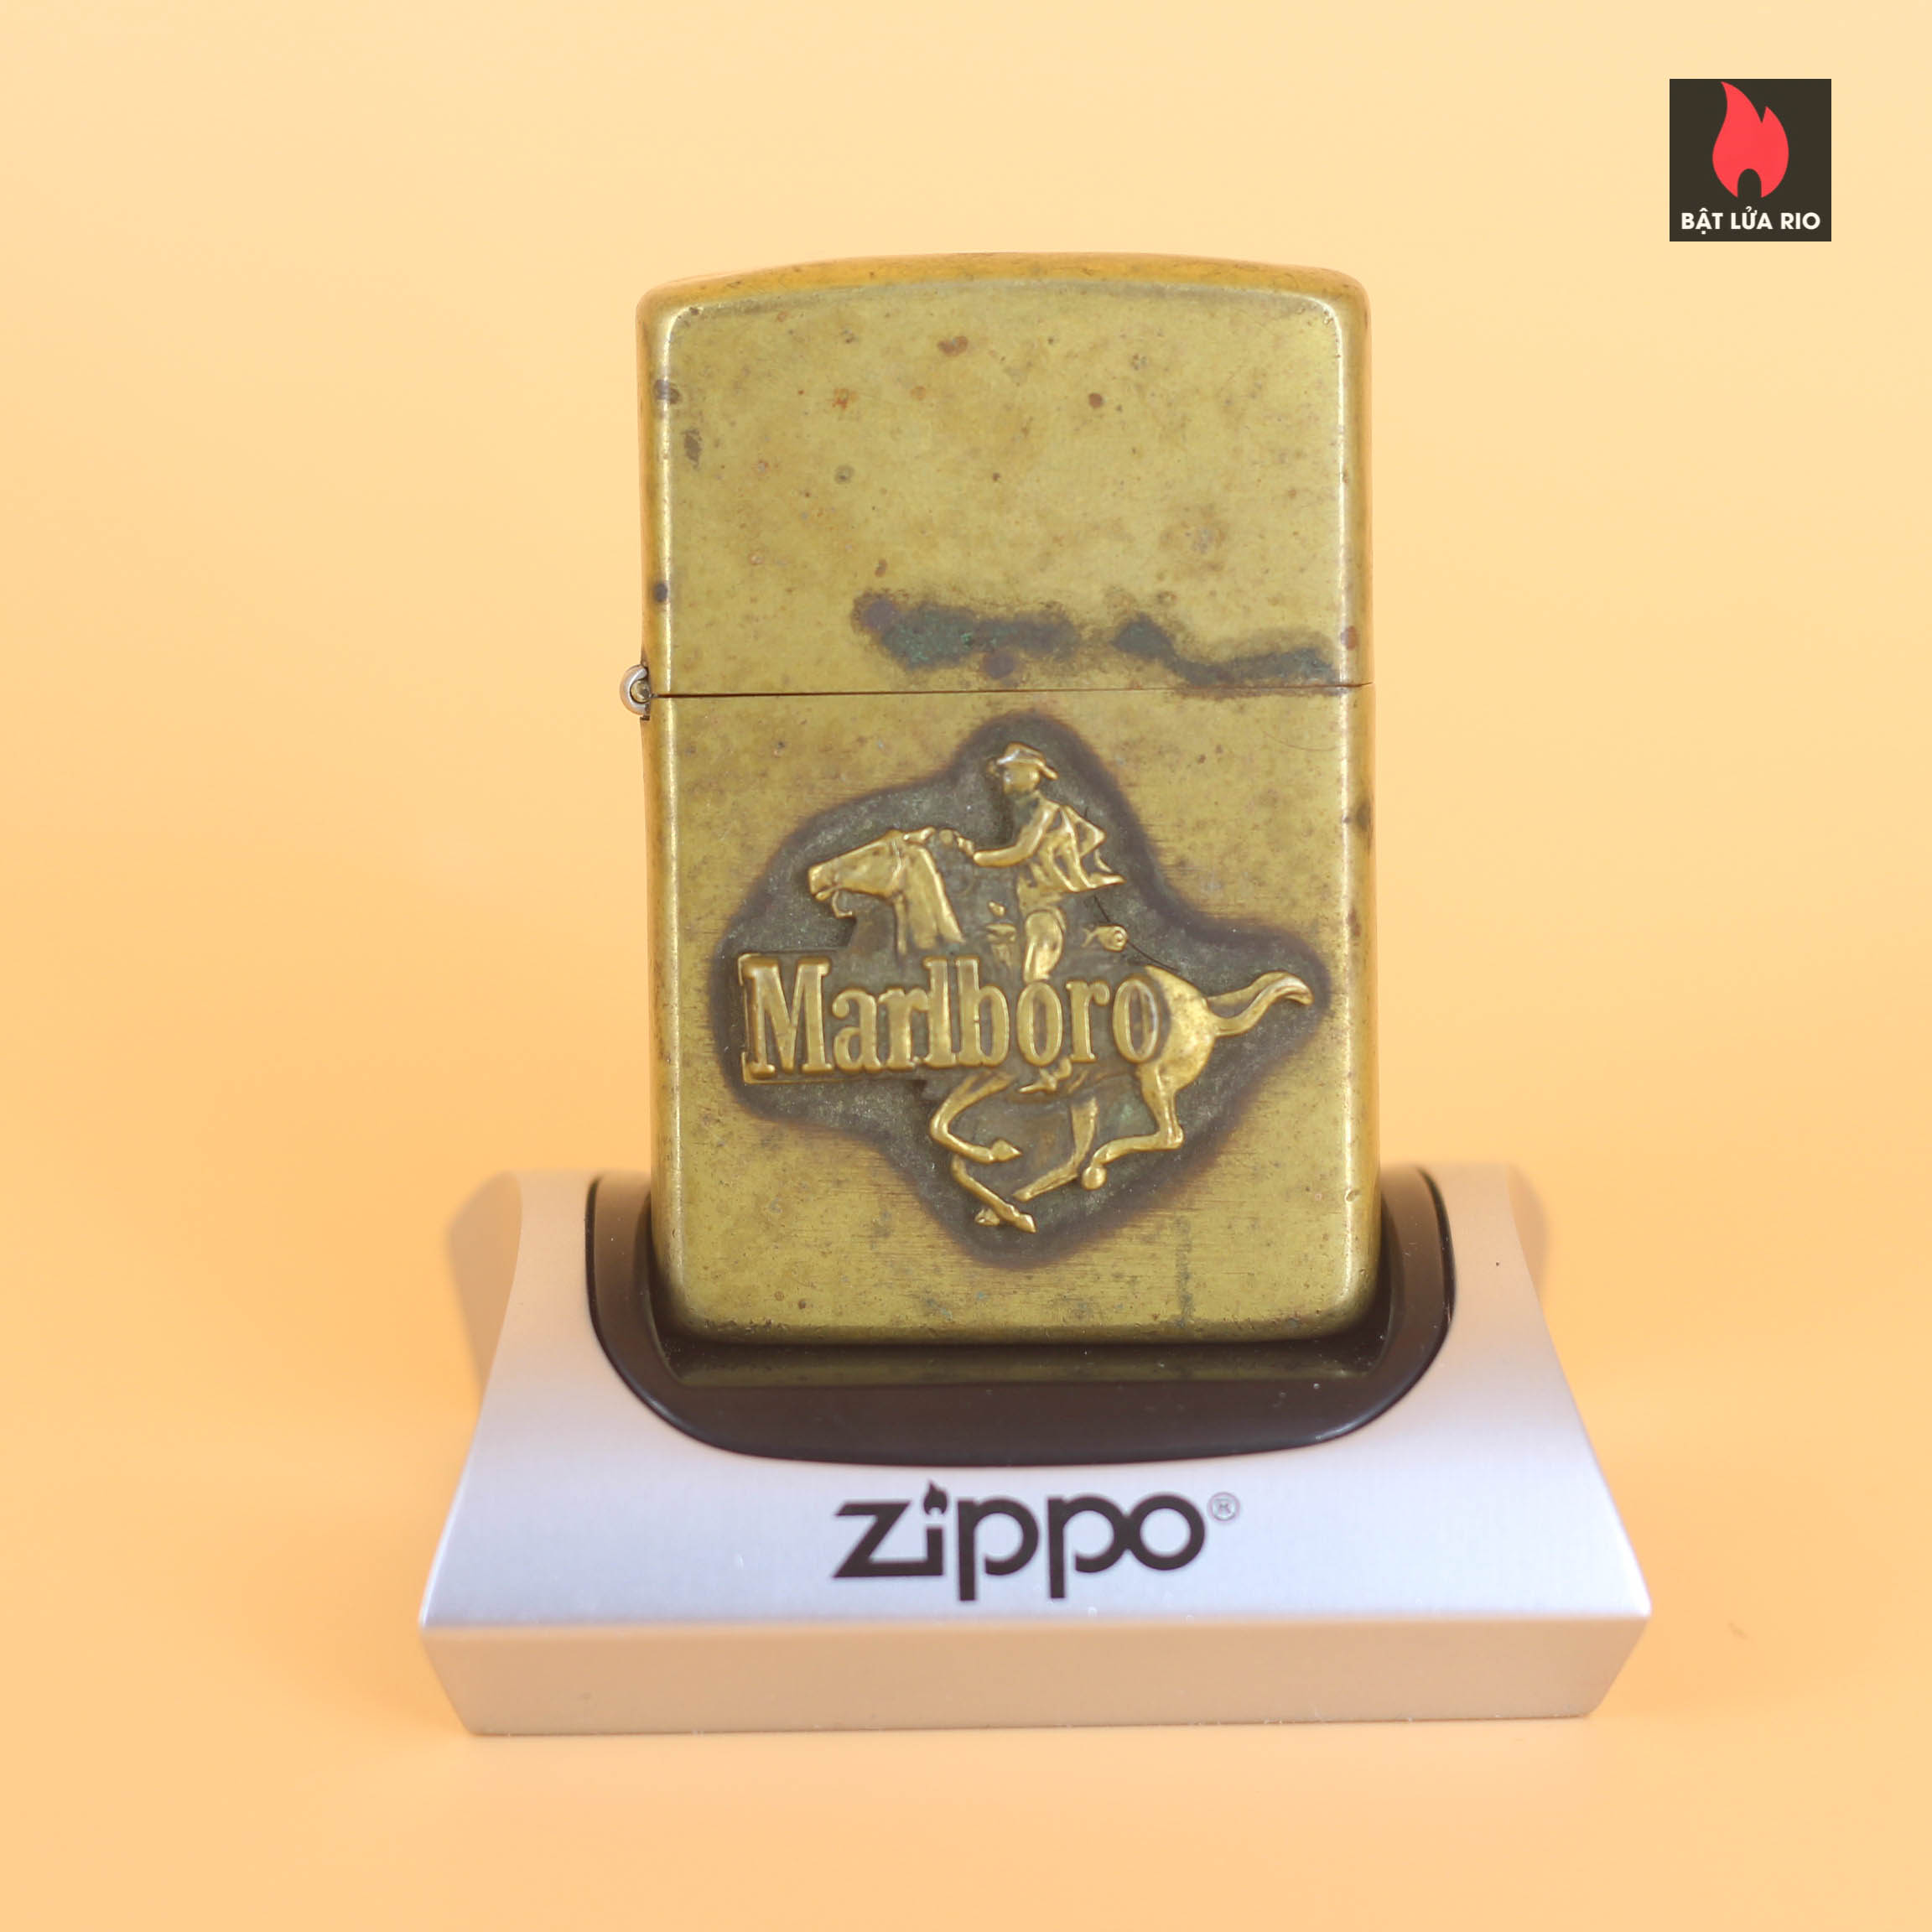 Zippo 1982 - Zippo Marlboro Running HorseMan 1982 - Solid Brass 15